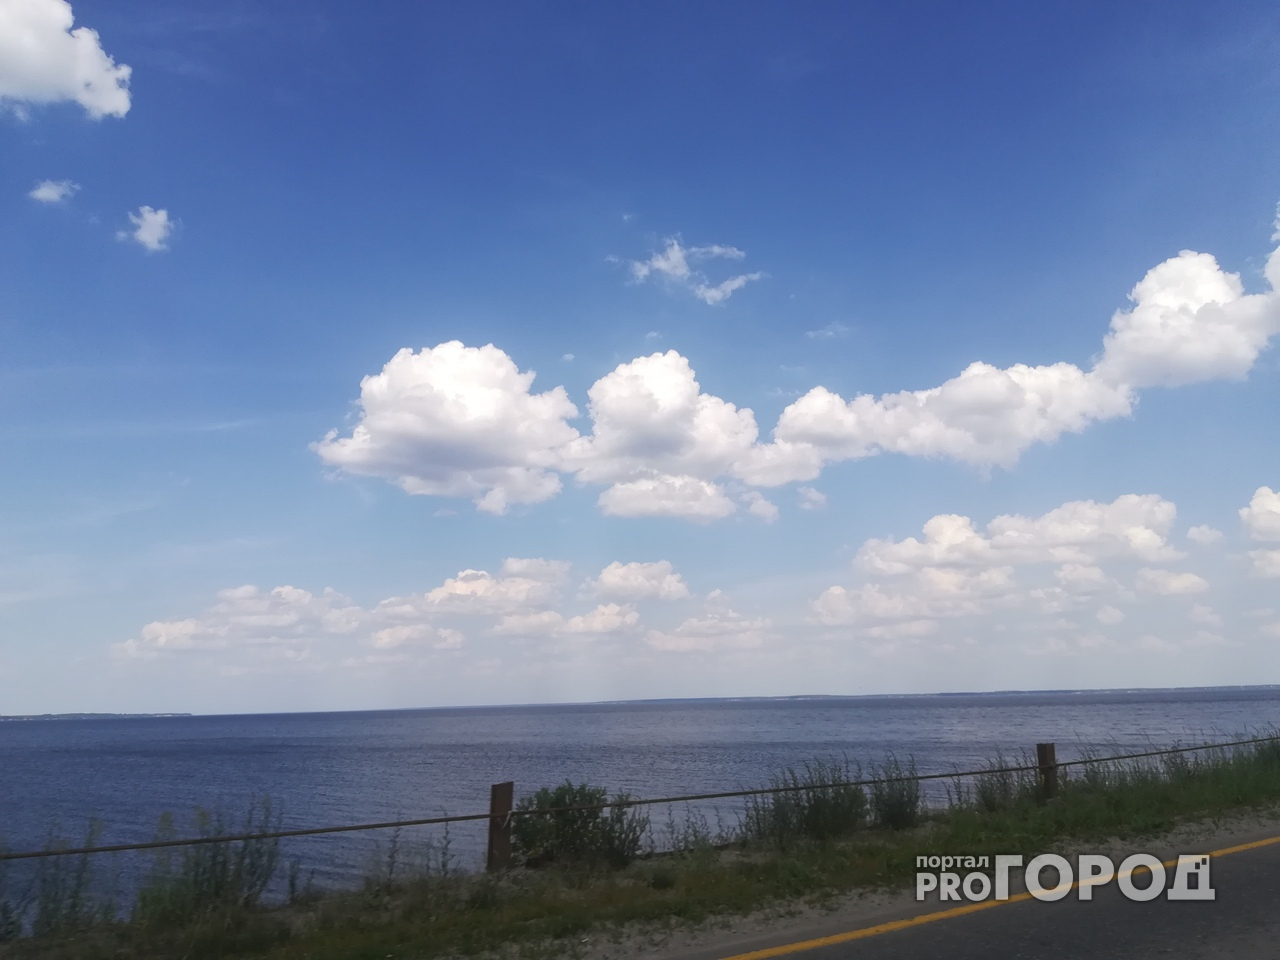 Прогноз погоды в Нижнем Новгороде: каким будет первый рабочий день?